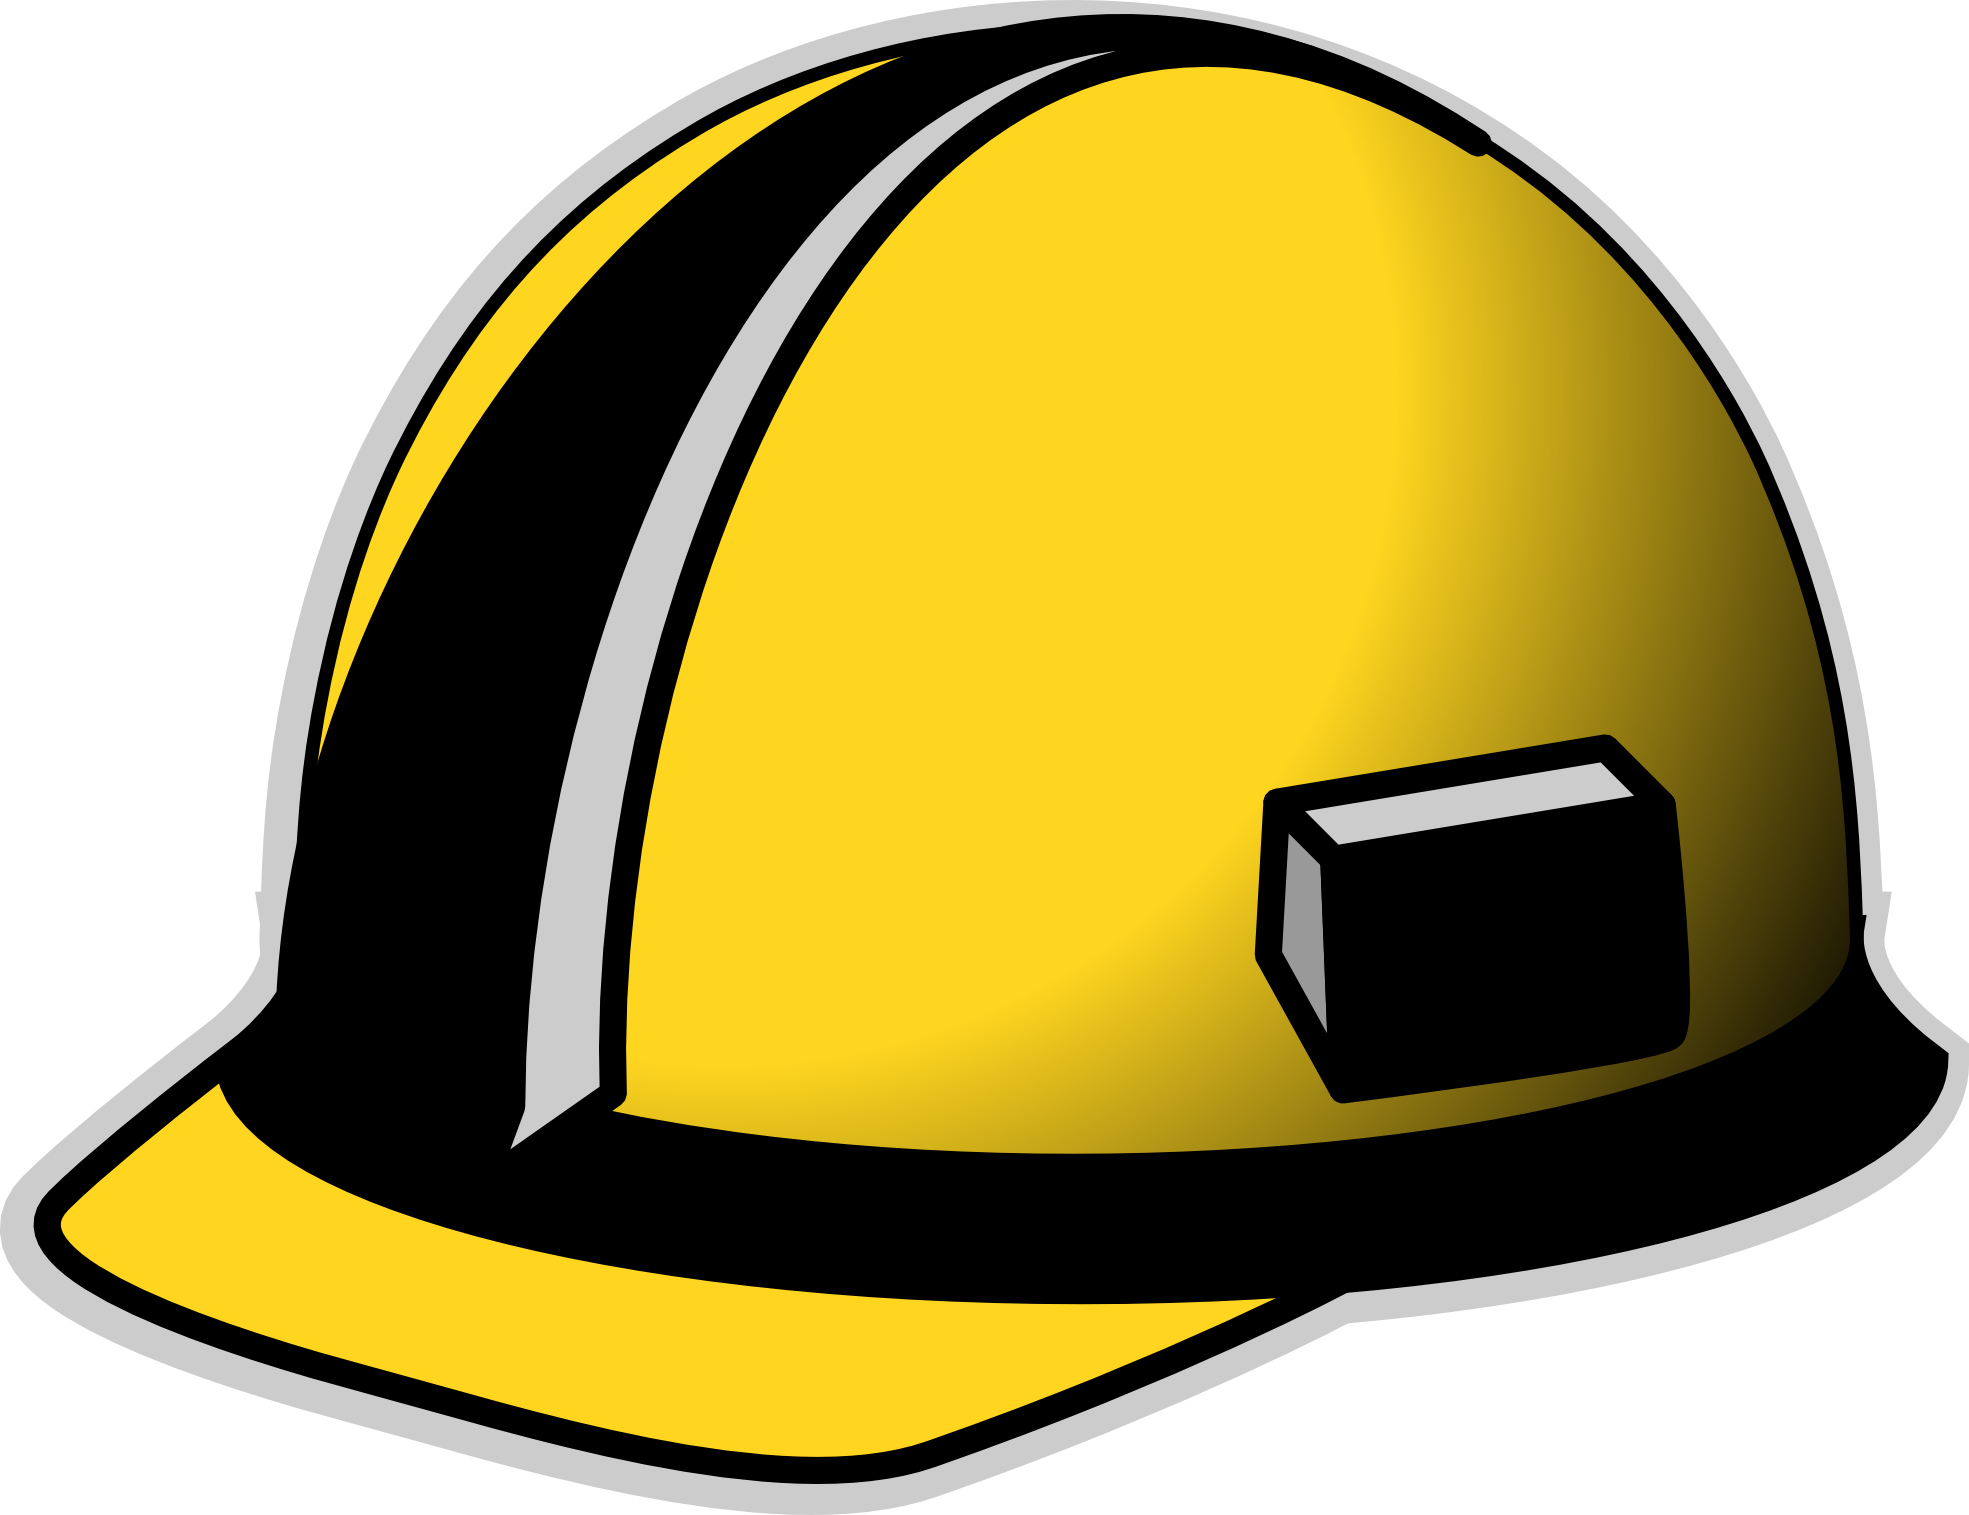 Pix For > Construction Hat Clipart